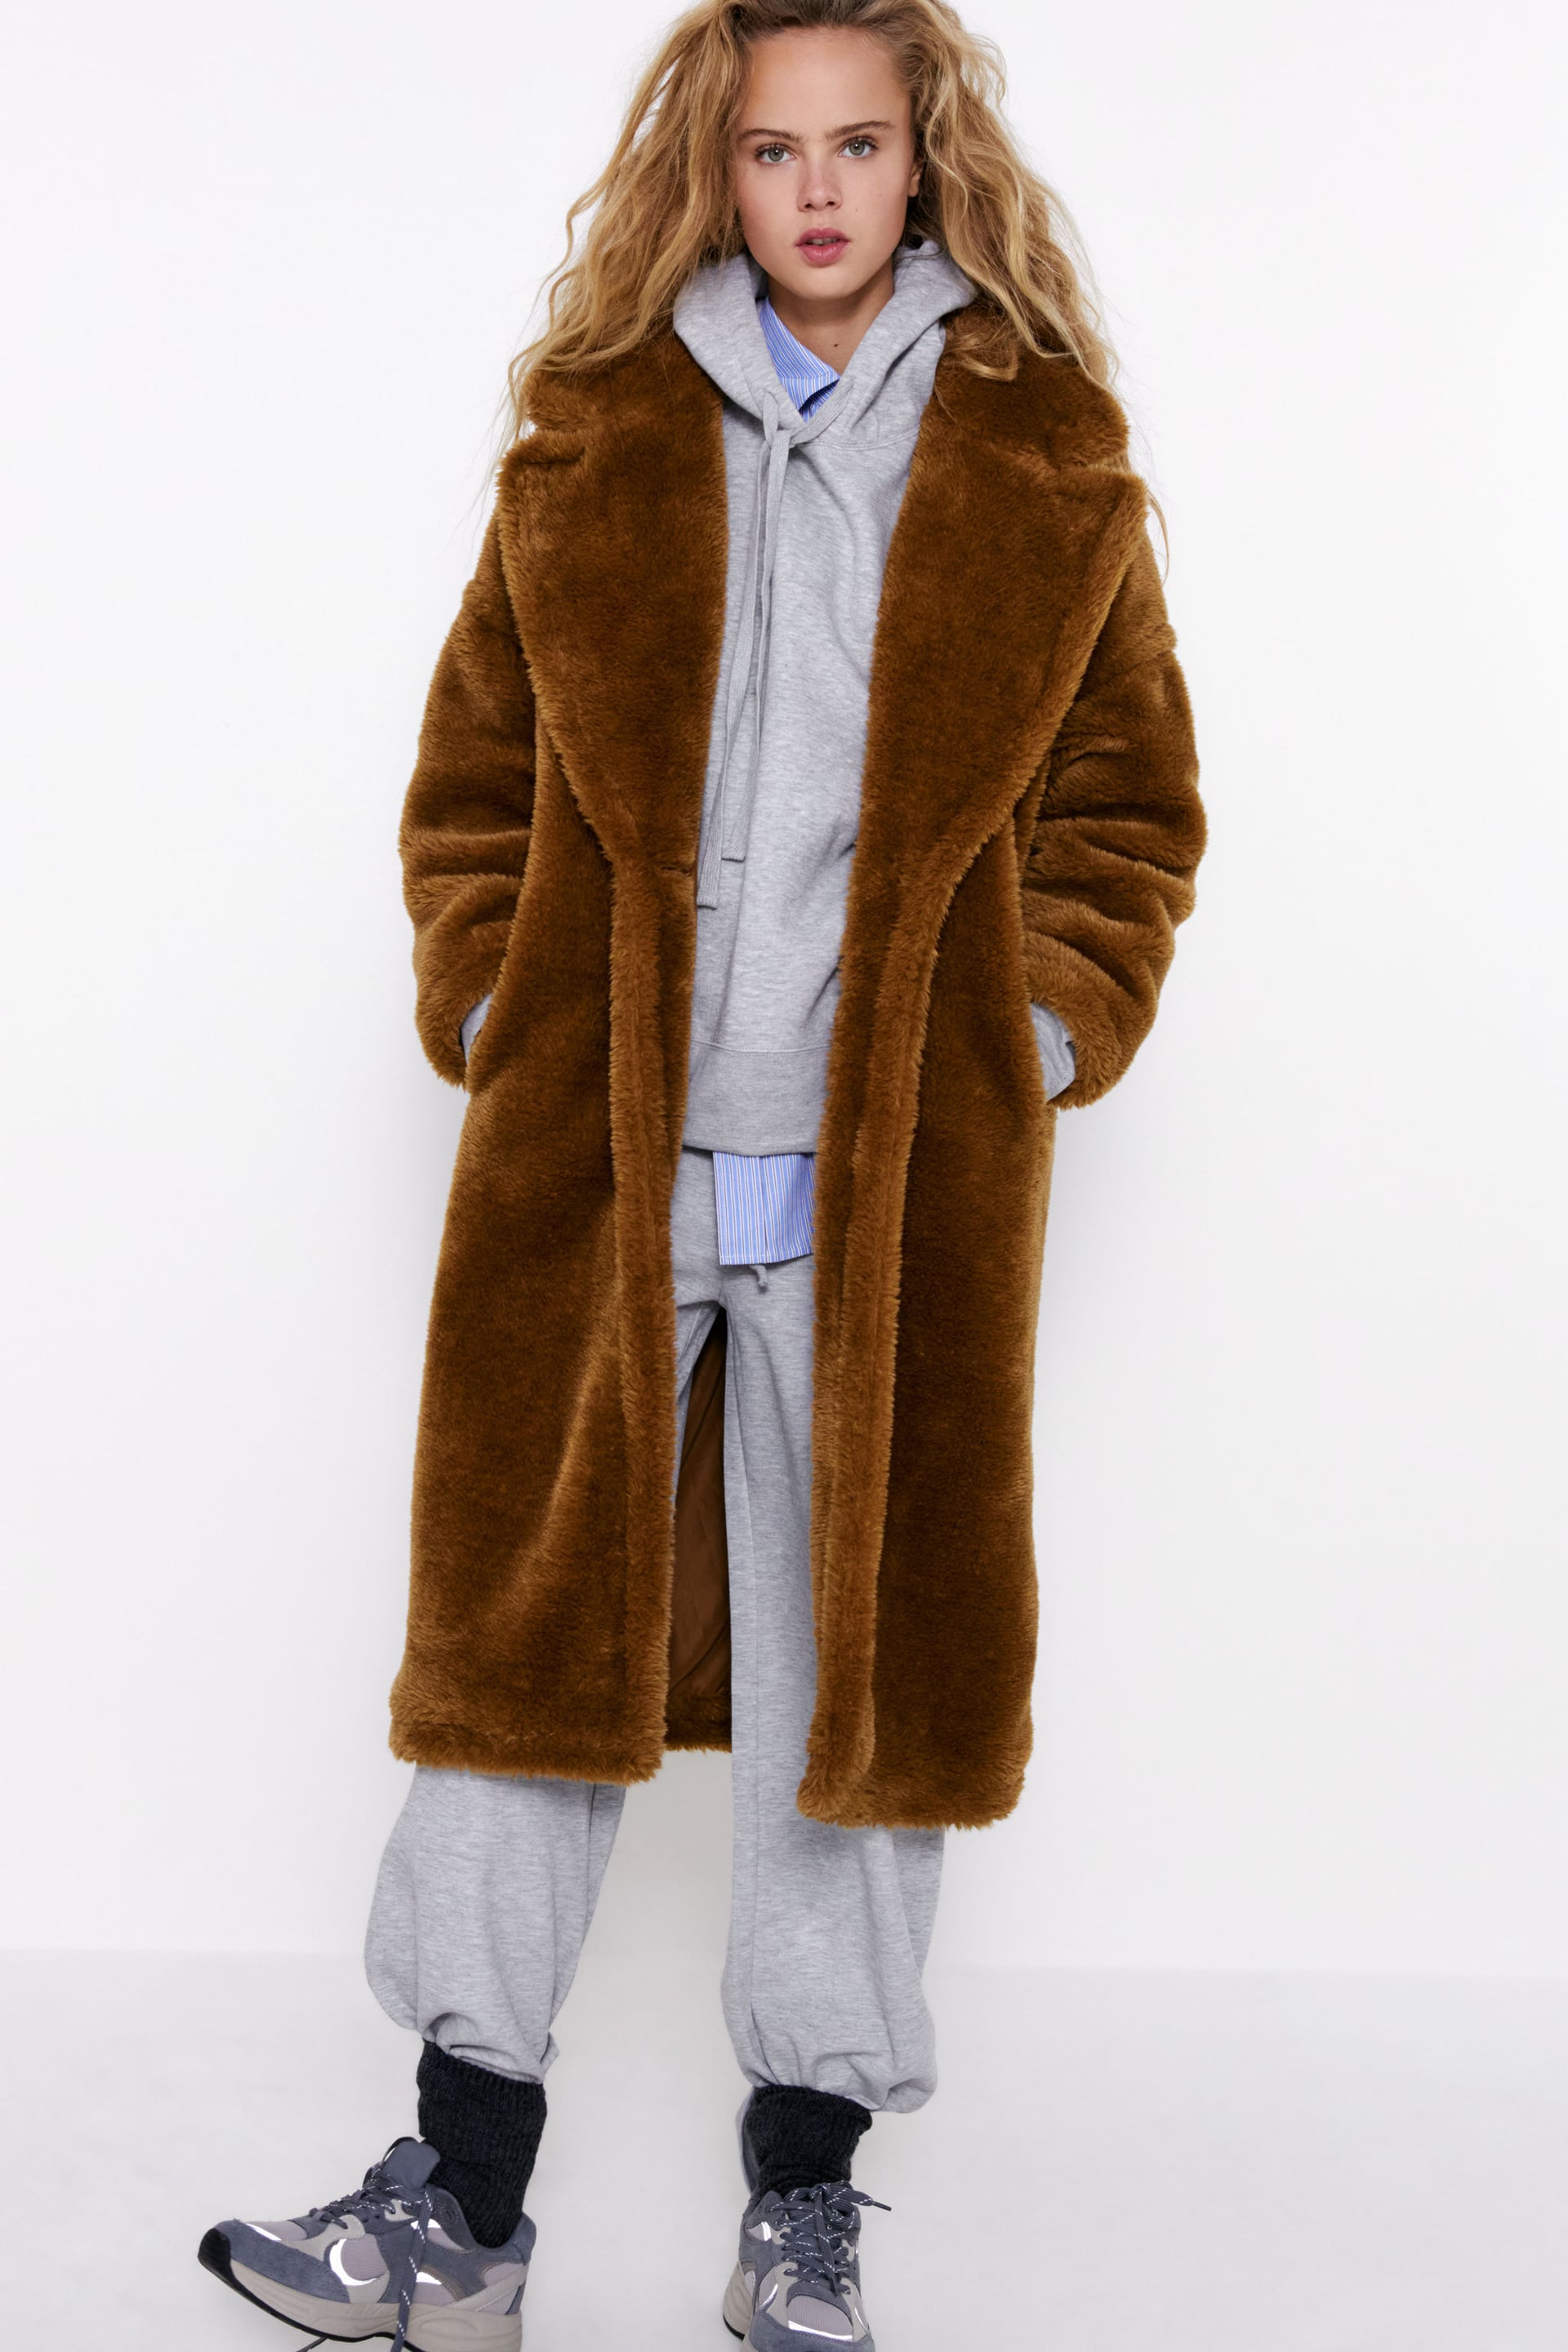 Los abrigos de más calentitos y amorosos de la temporada | Moda, Shopping | S Moda EL PAÍS